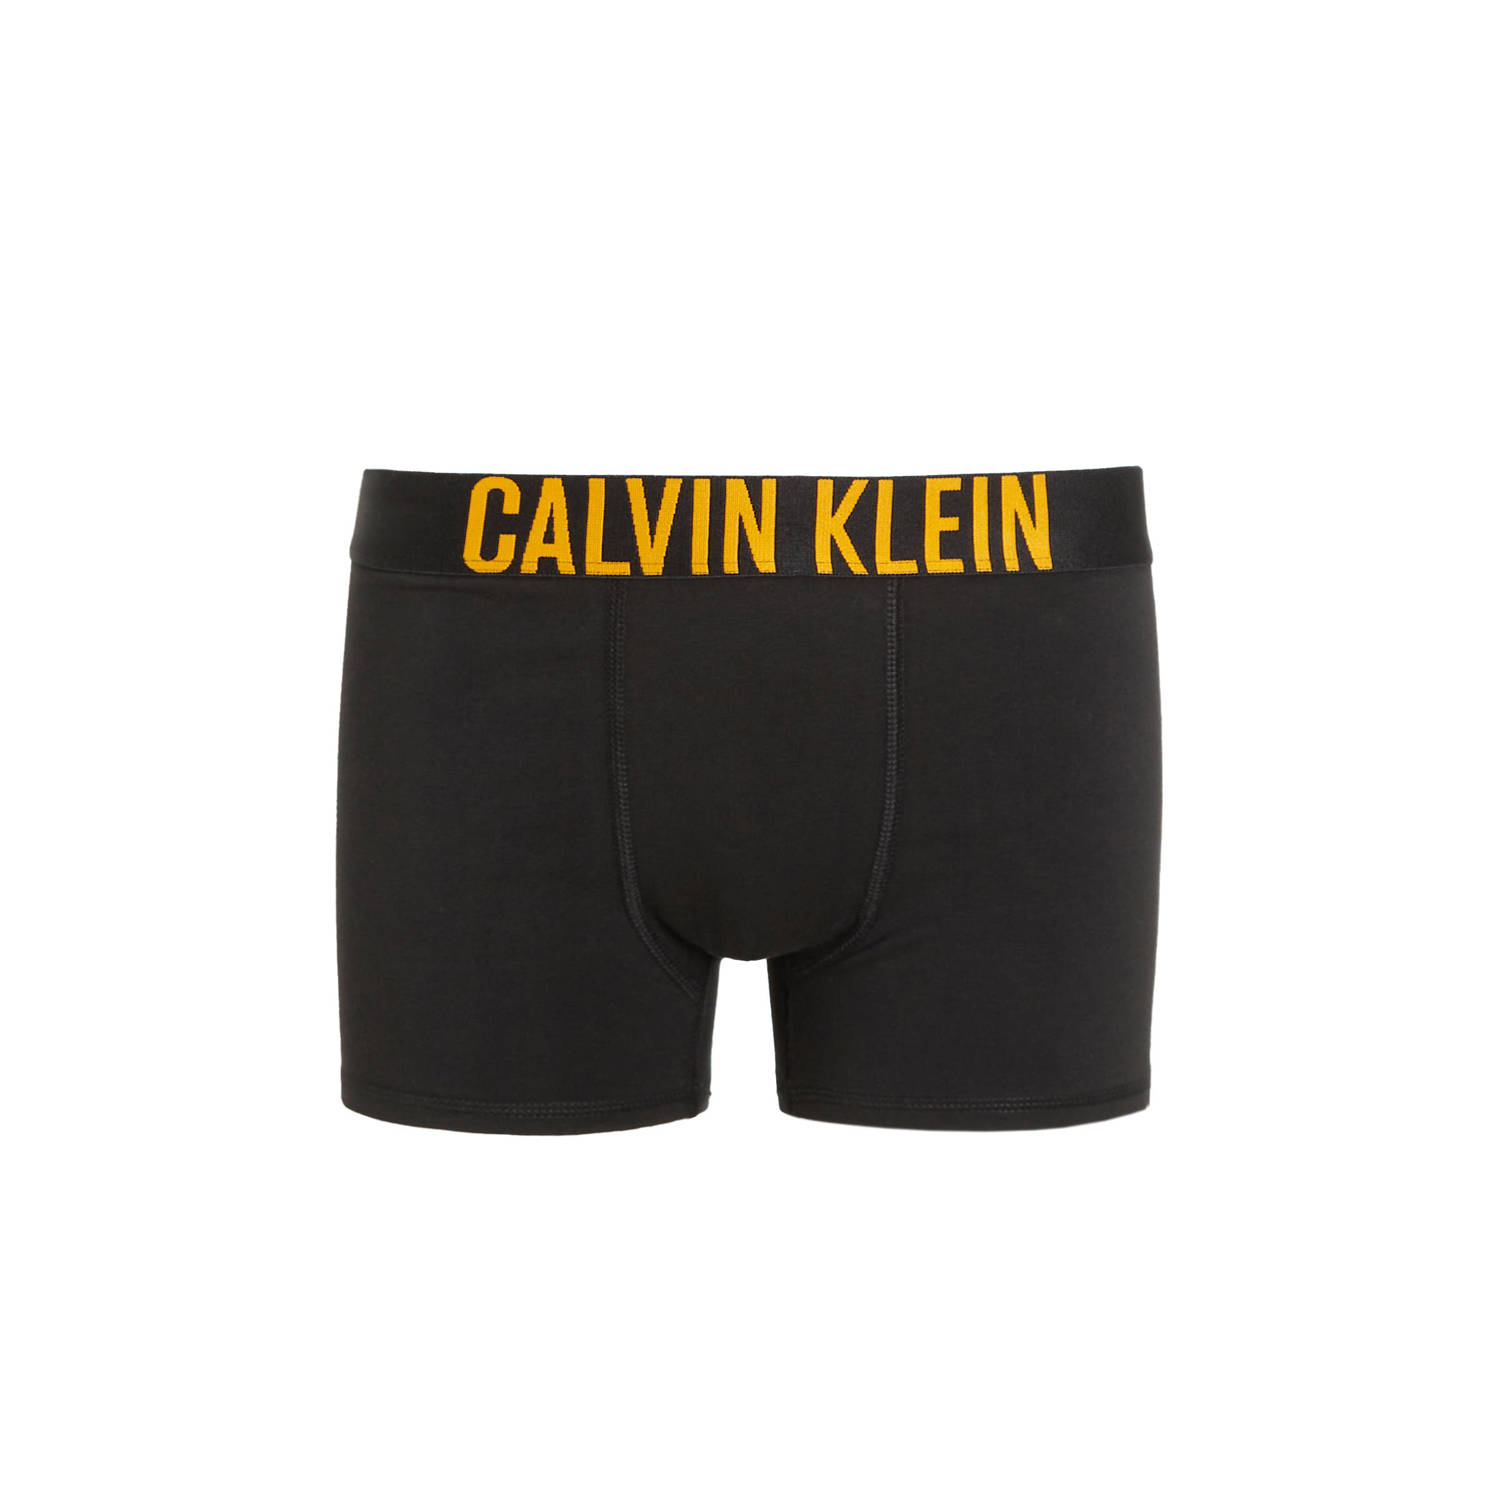 Calvin Klein boxershort set van 3 felgroen grijs melange zwart